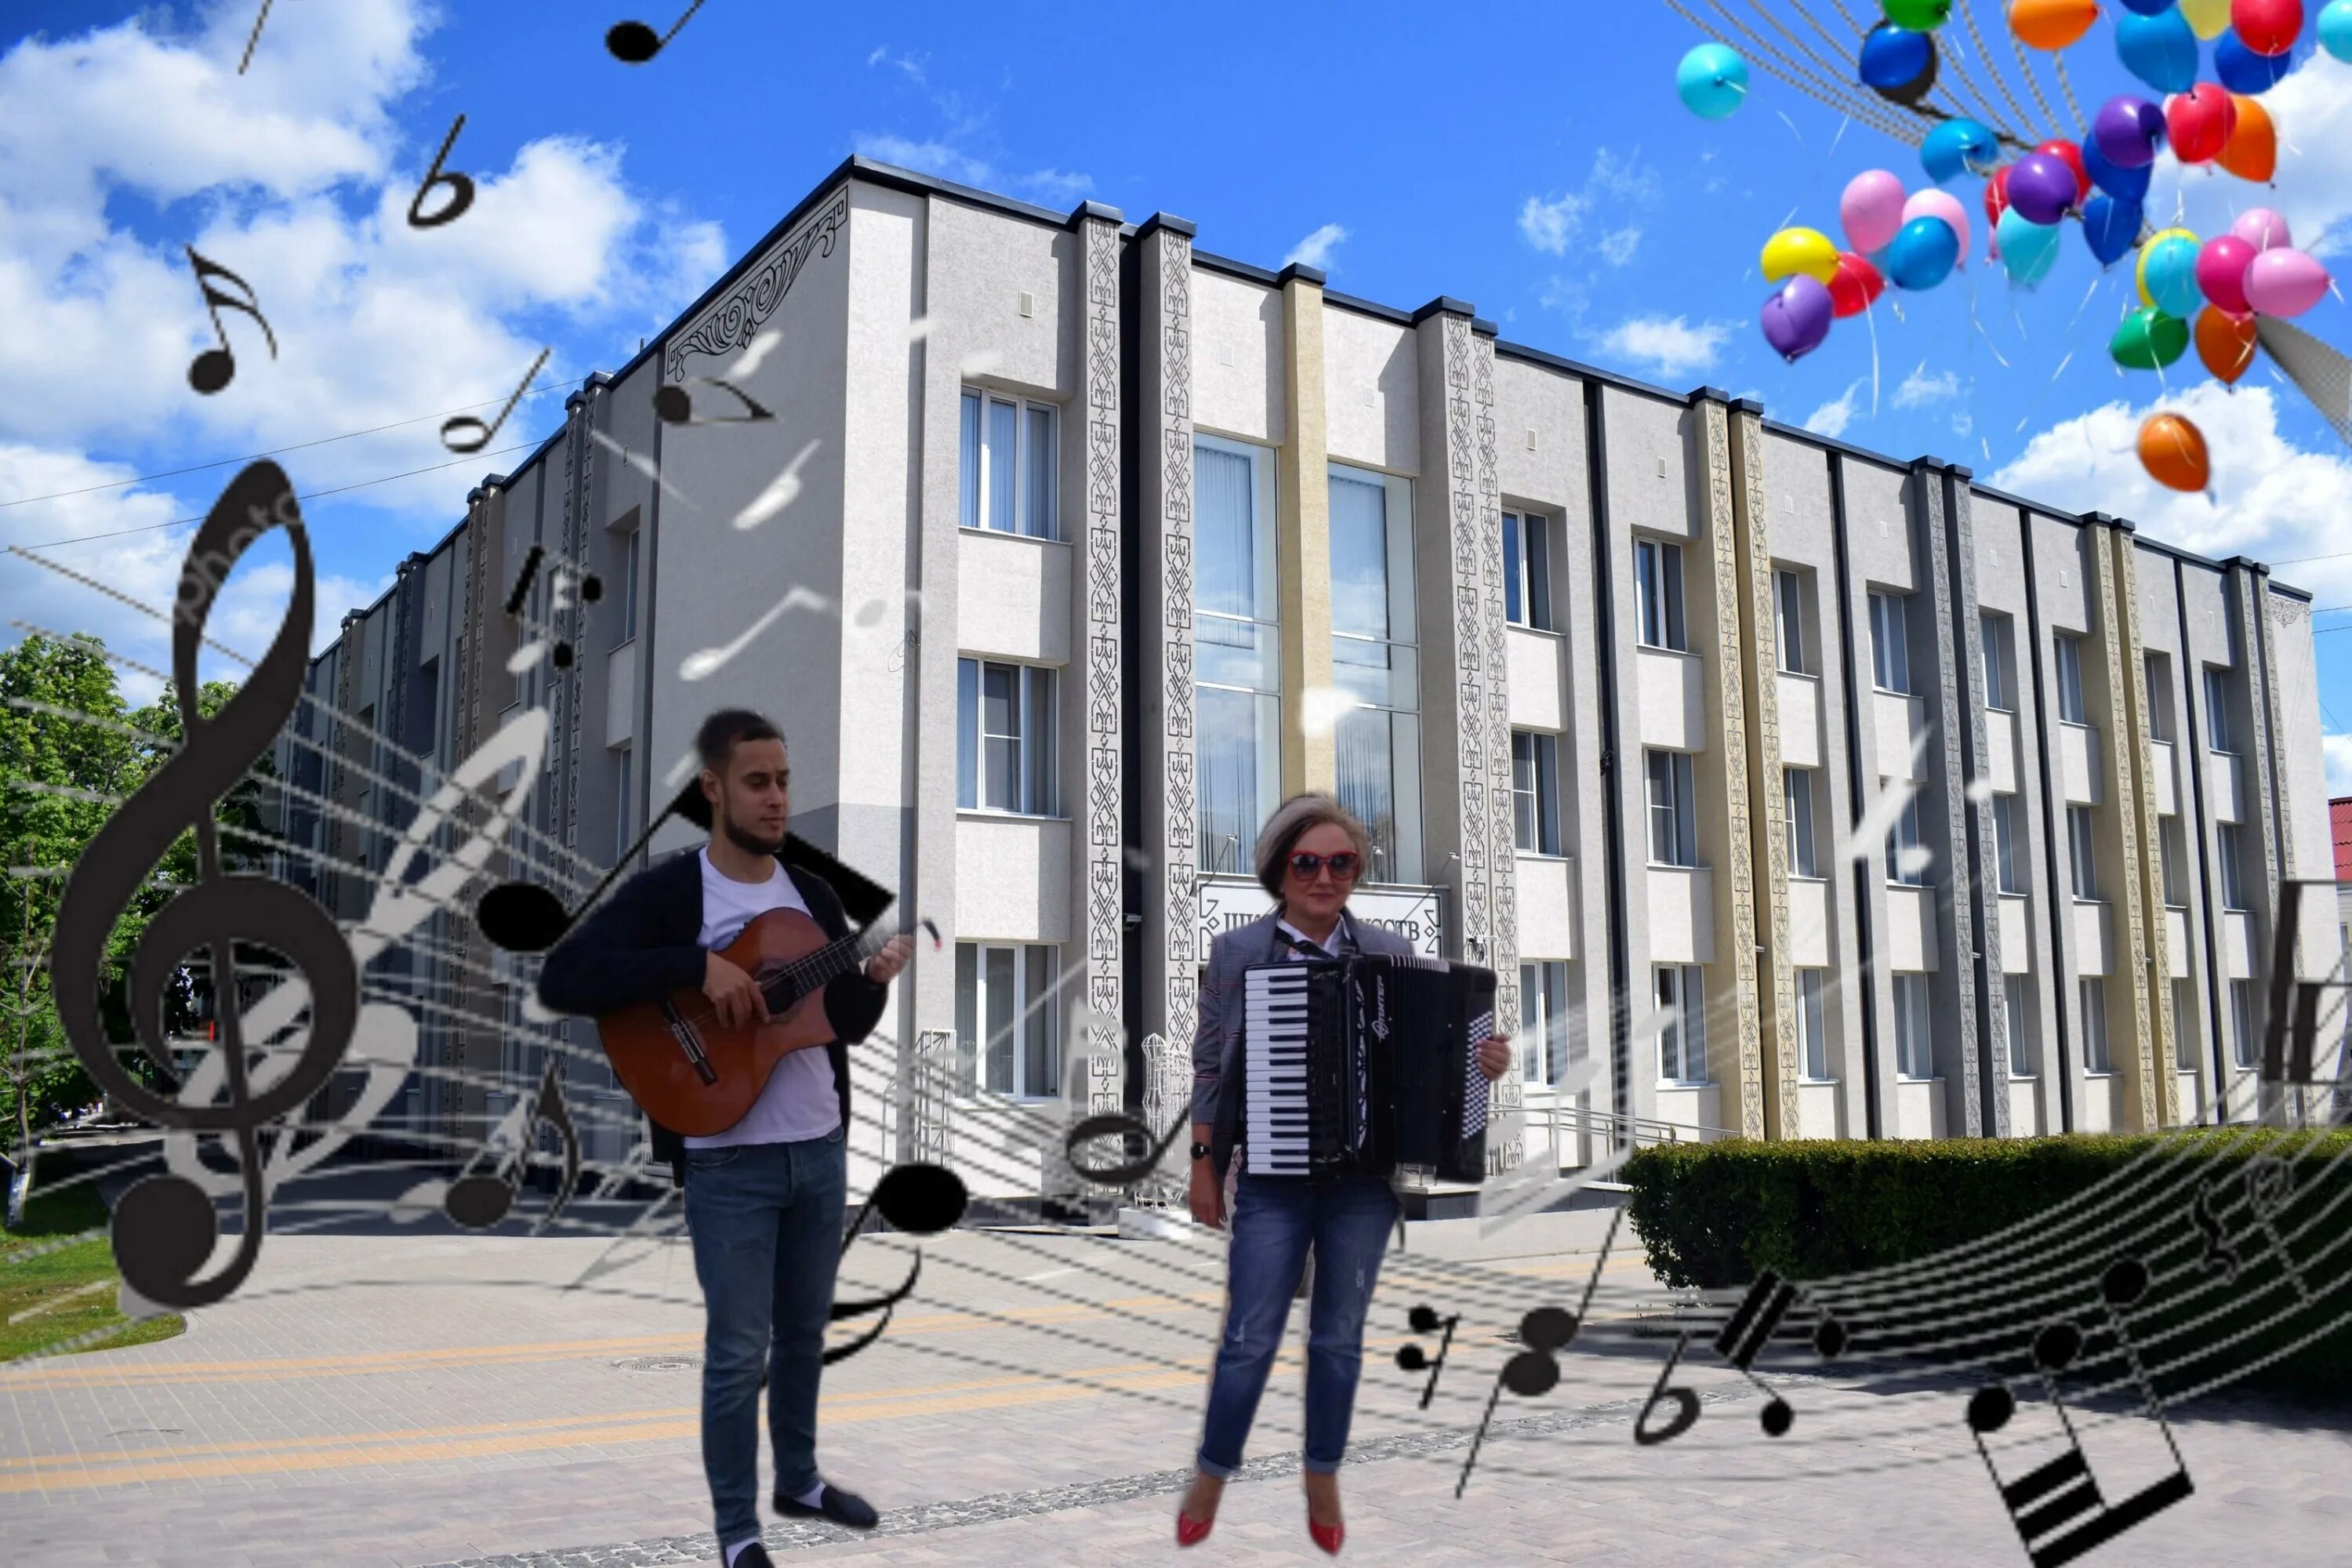 Ул музыкальная 1. Школа искусств Алексеевка. Гармония музыкальная улица. Музыкальная улица. Музыка на улице.